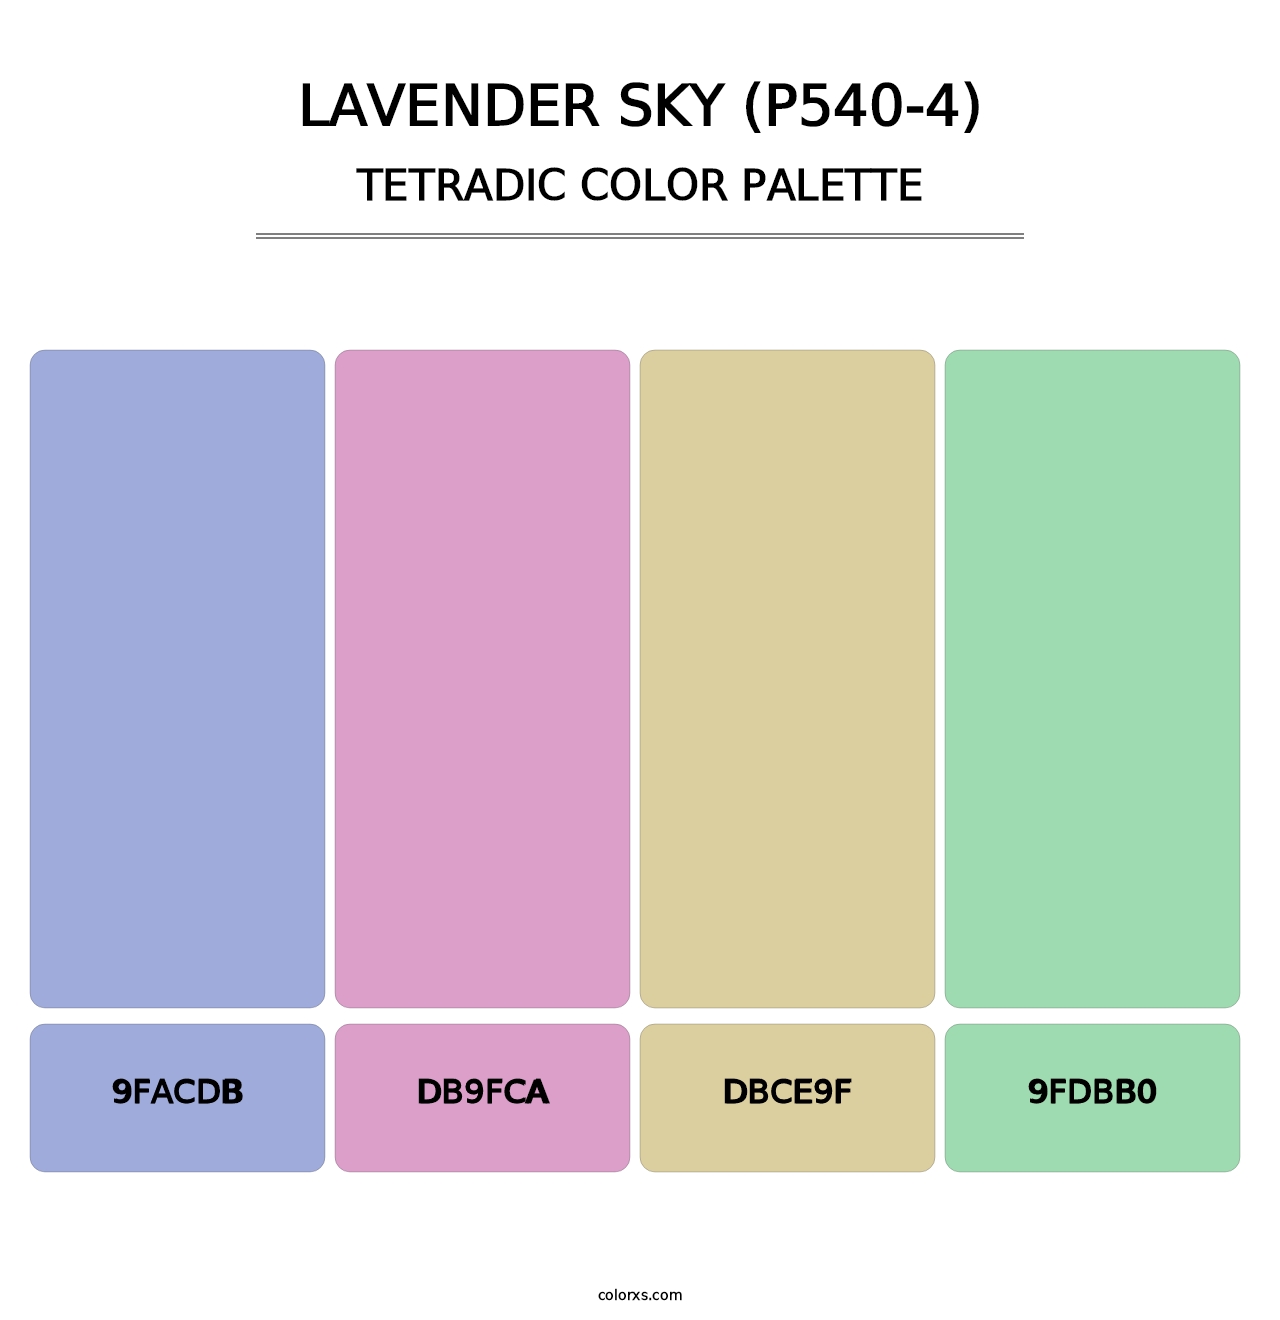 Lavender Sky (P540-4) - Tetradic Color Palette